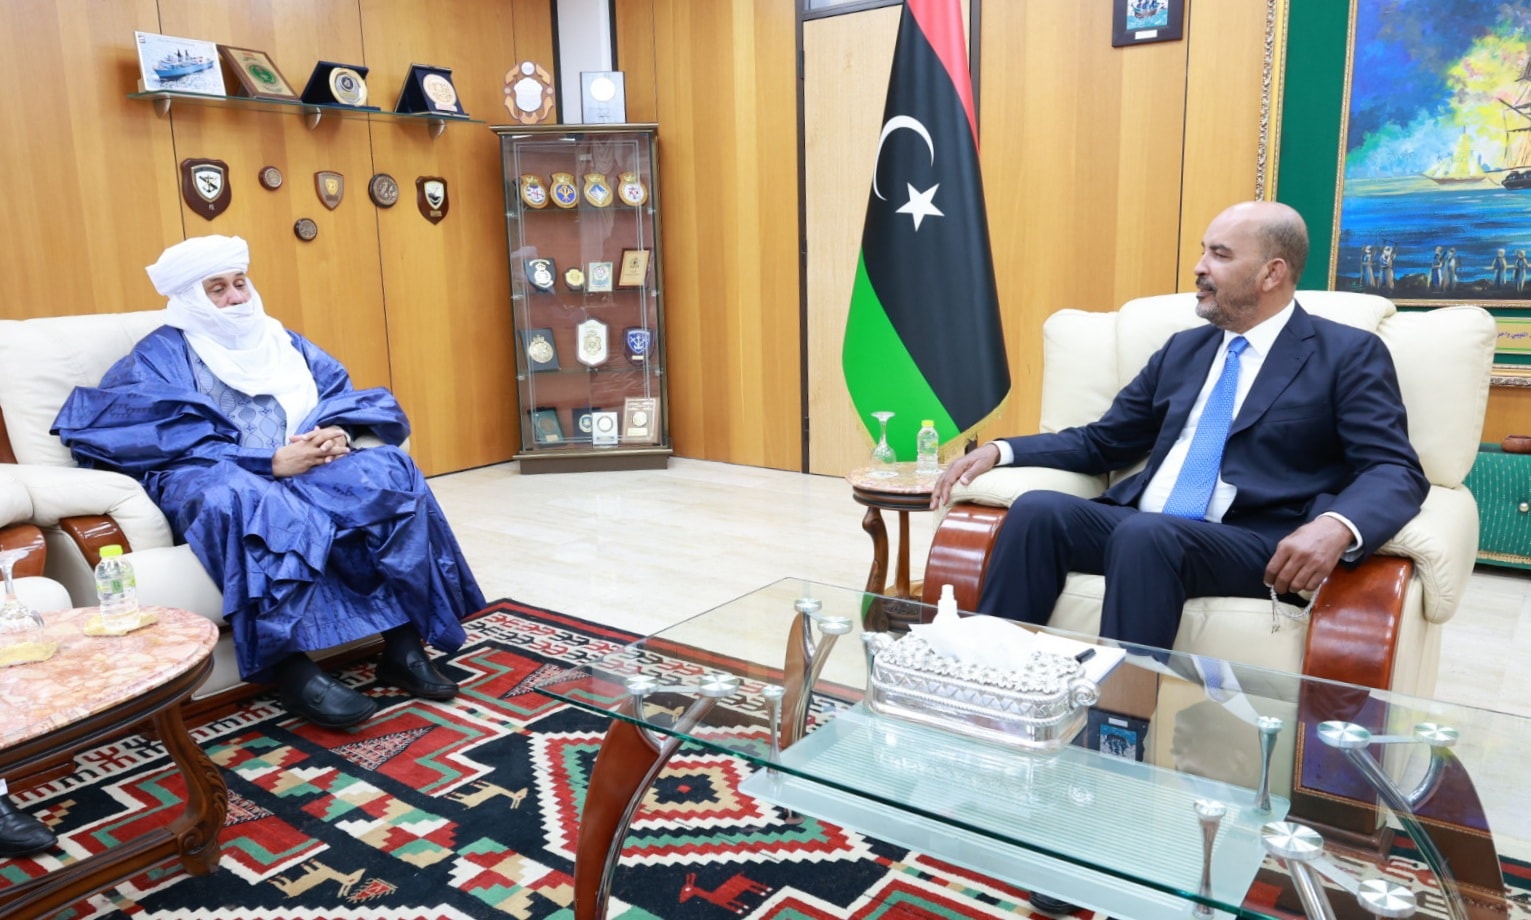 موسى الكوني يلتقي سفير النيجر حاملاً رسالة اخوية من الرئيس بوعزوم.